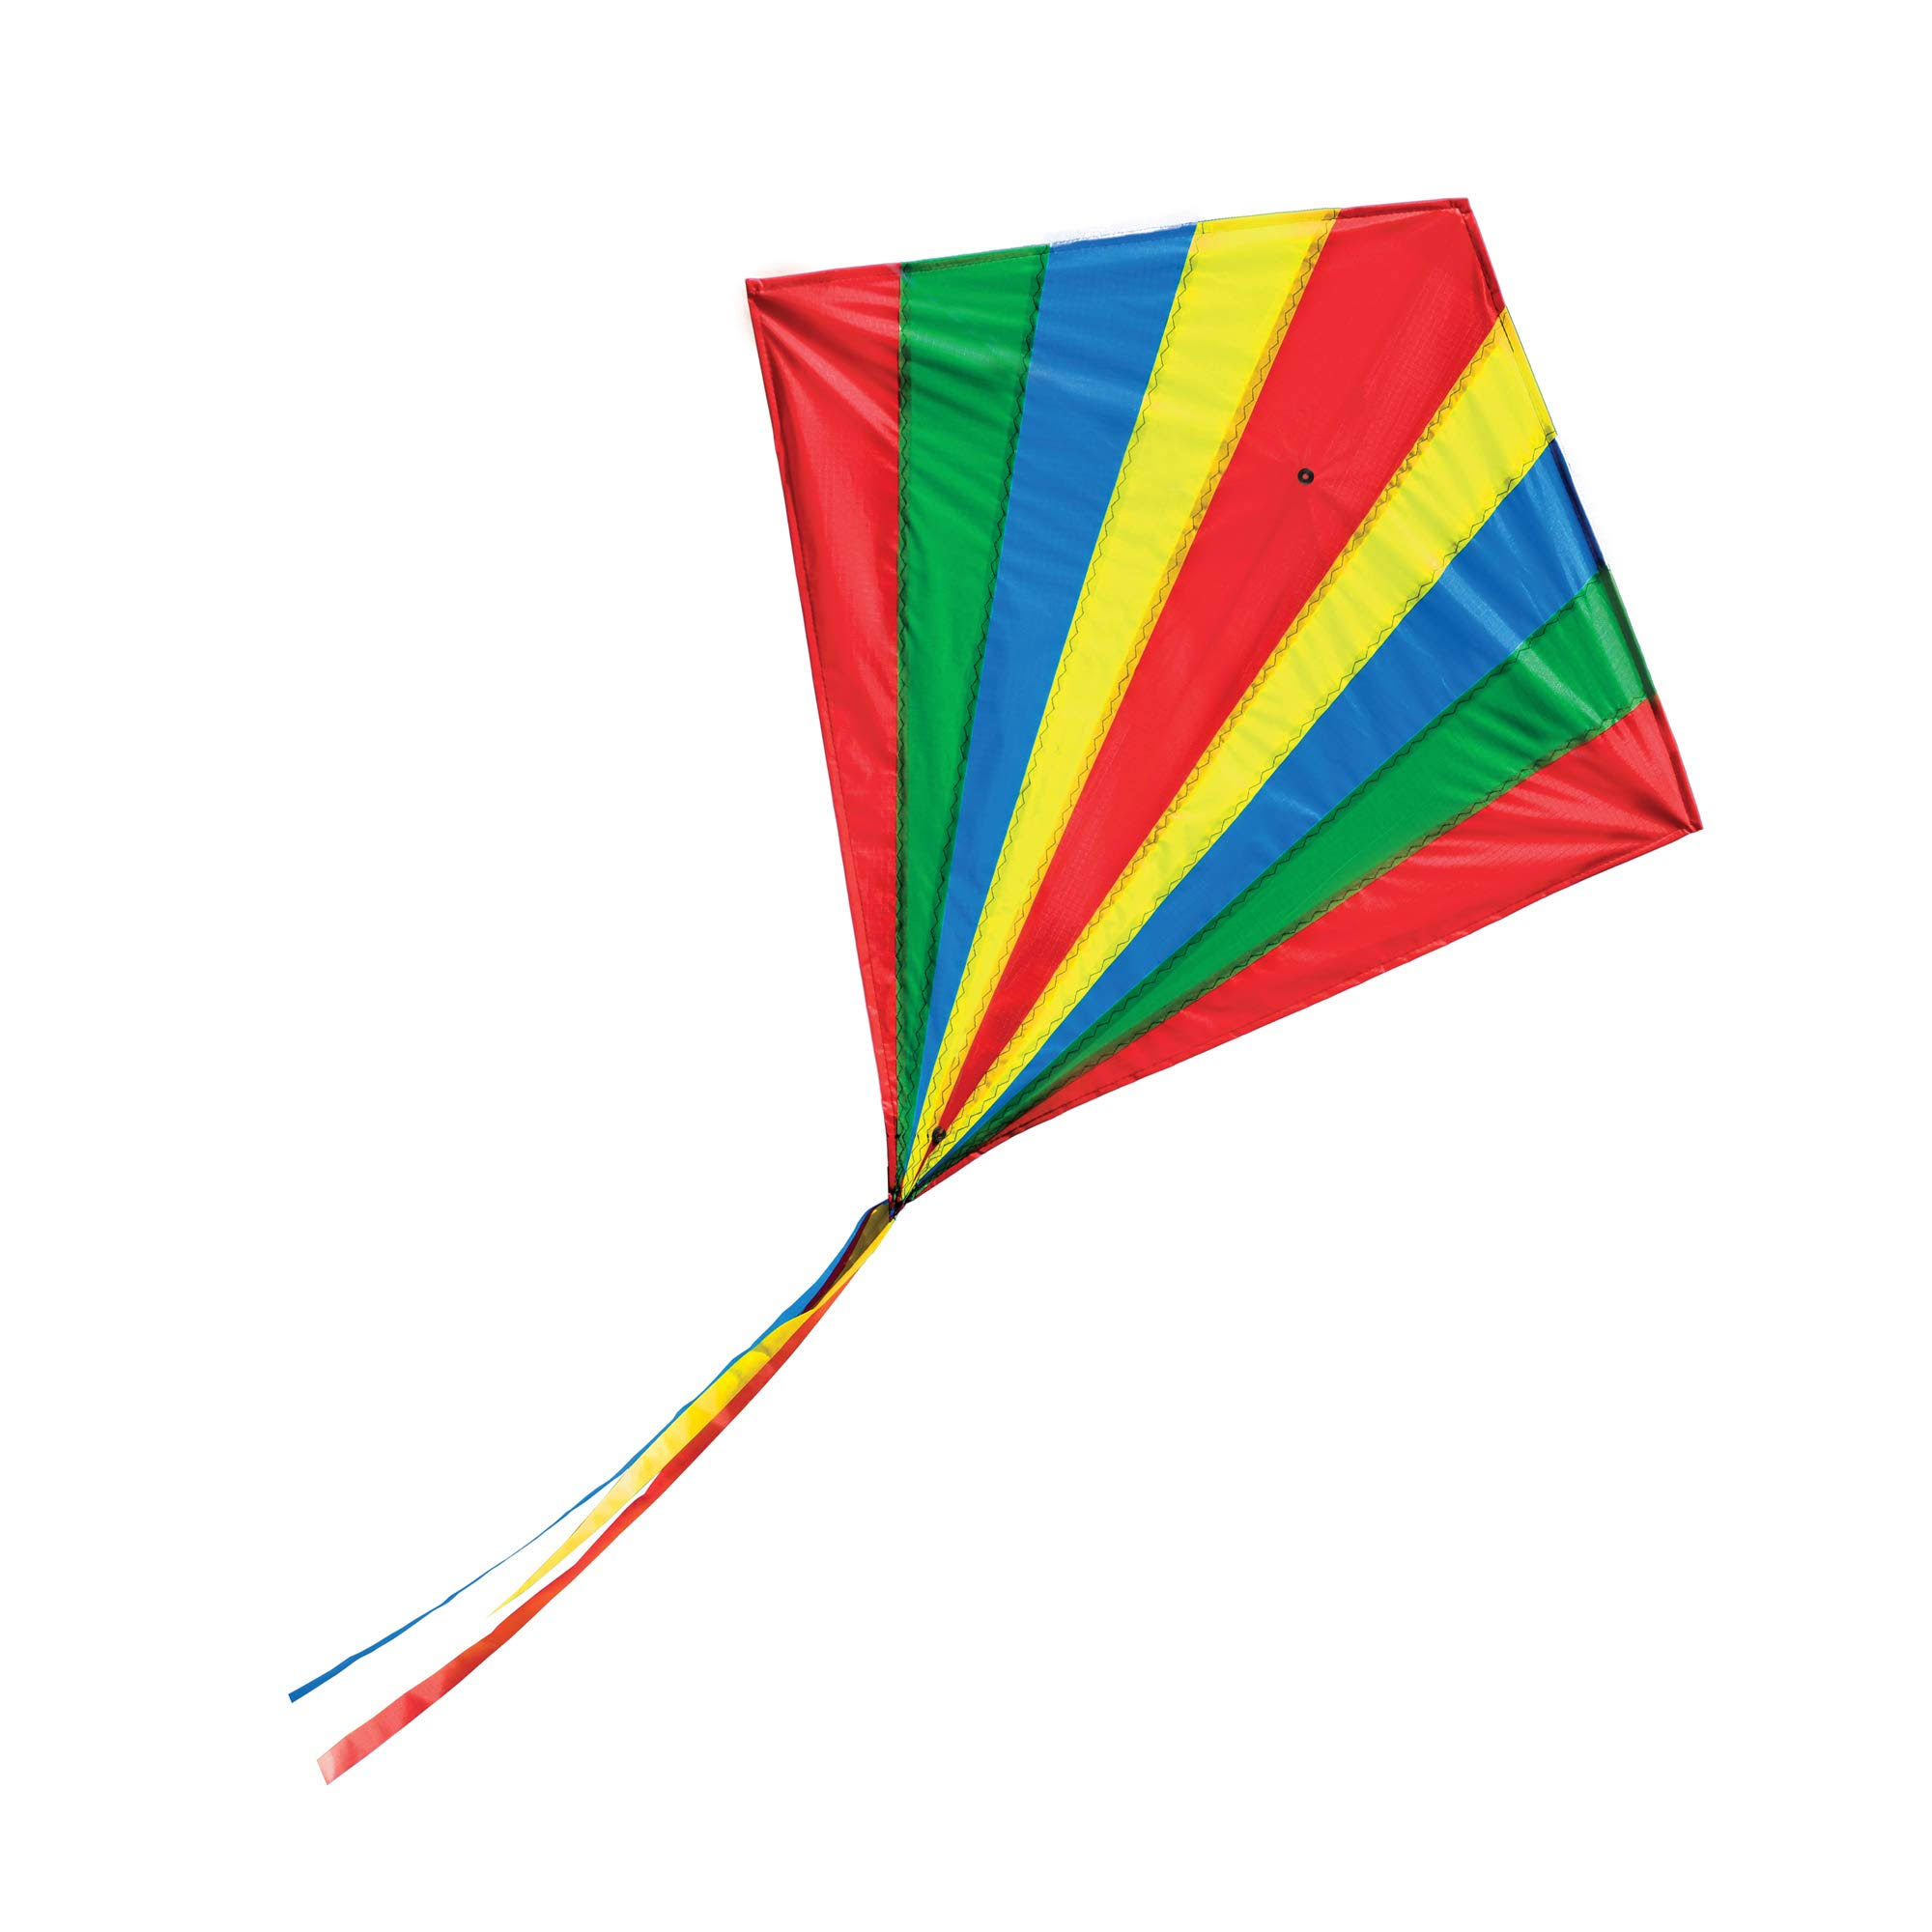 Melissa doug 30212 spectrum diamond kite